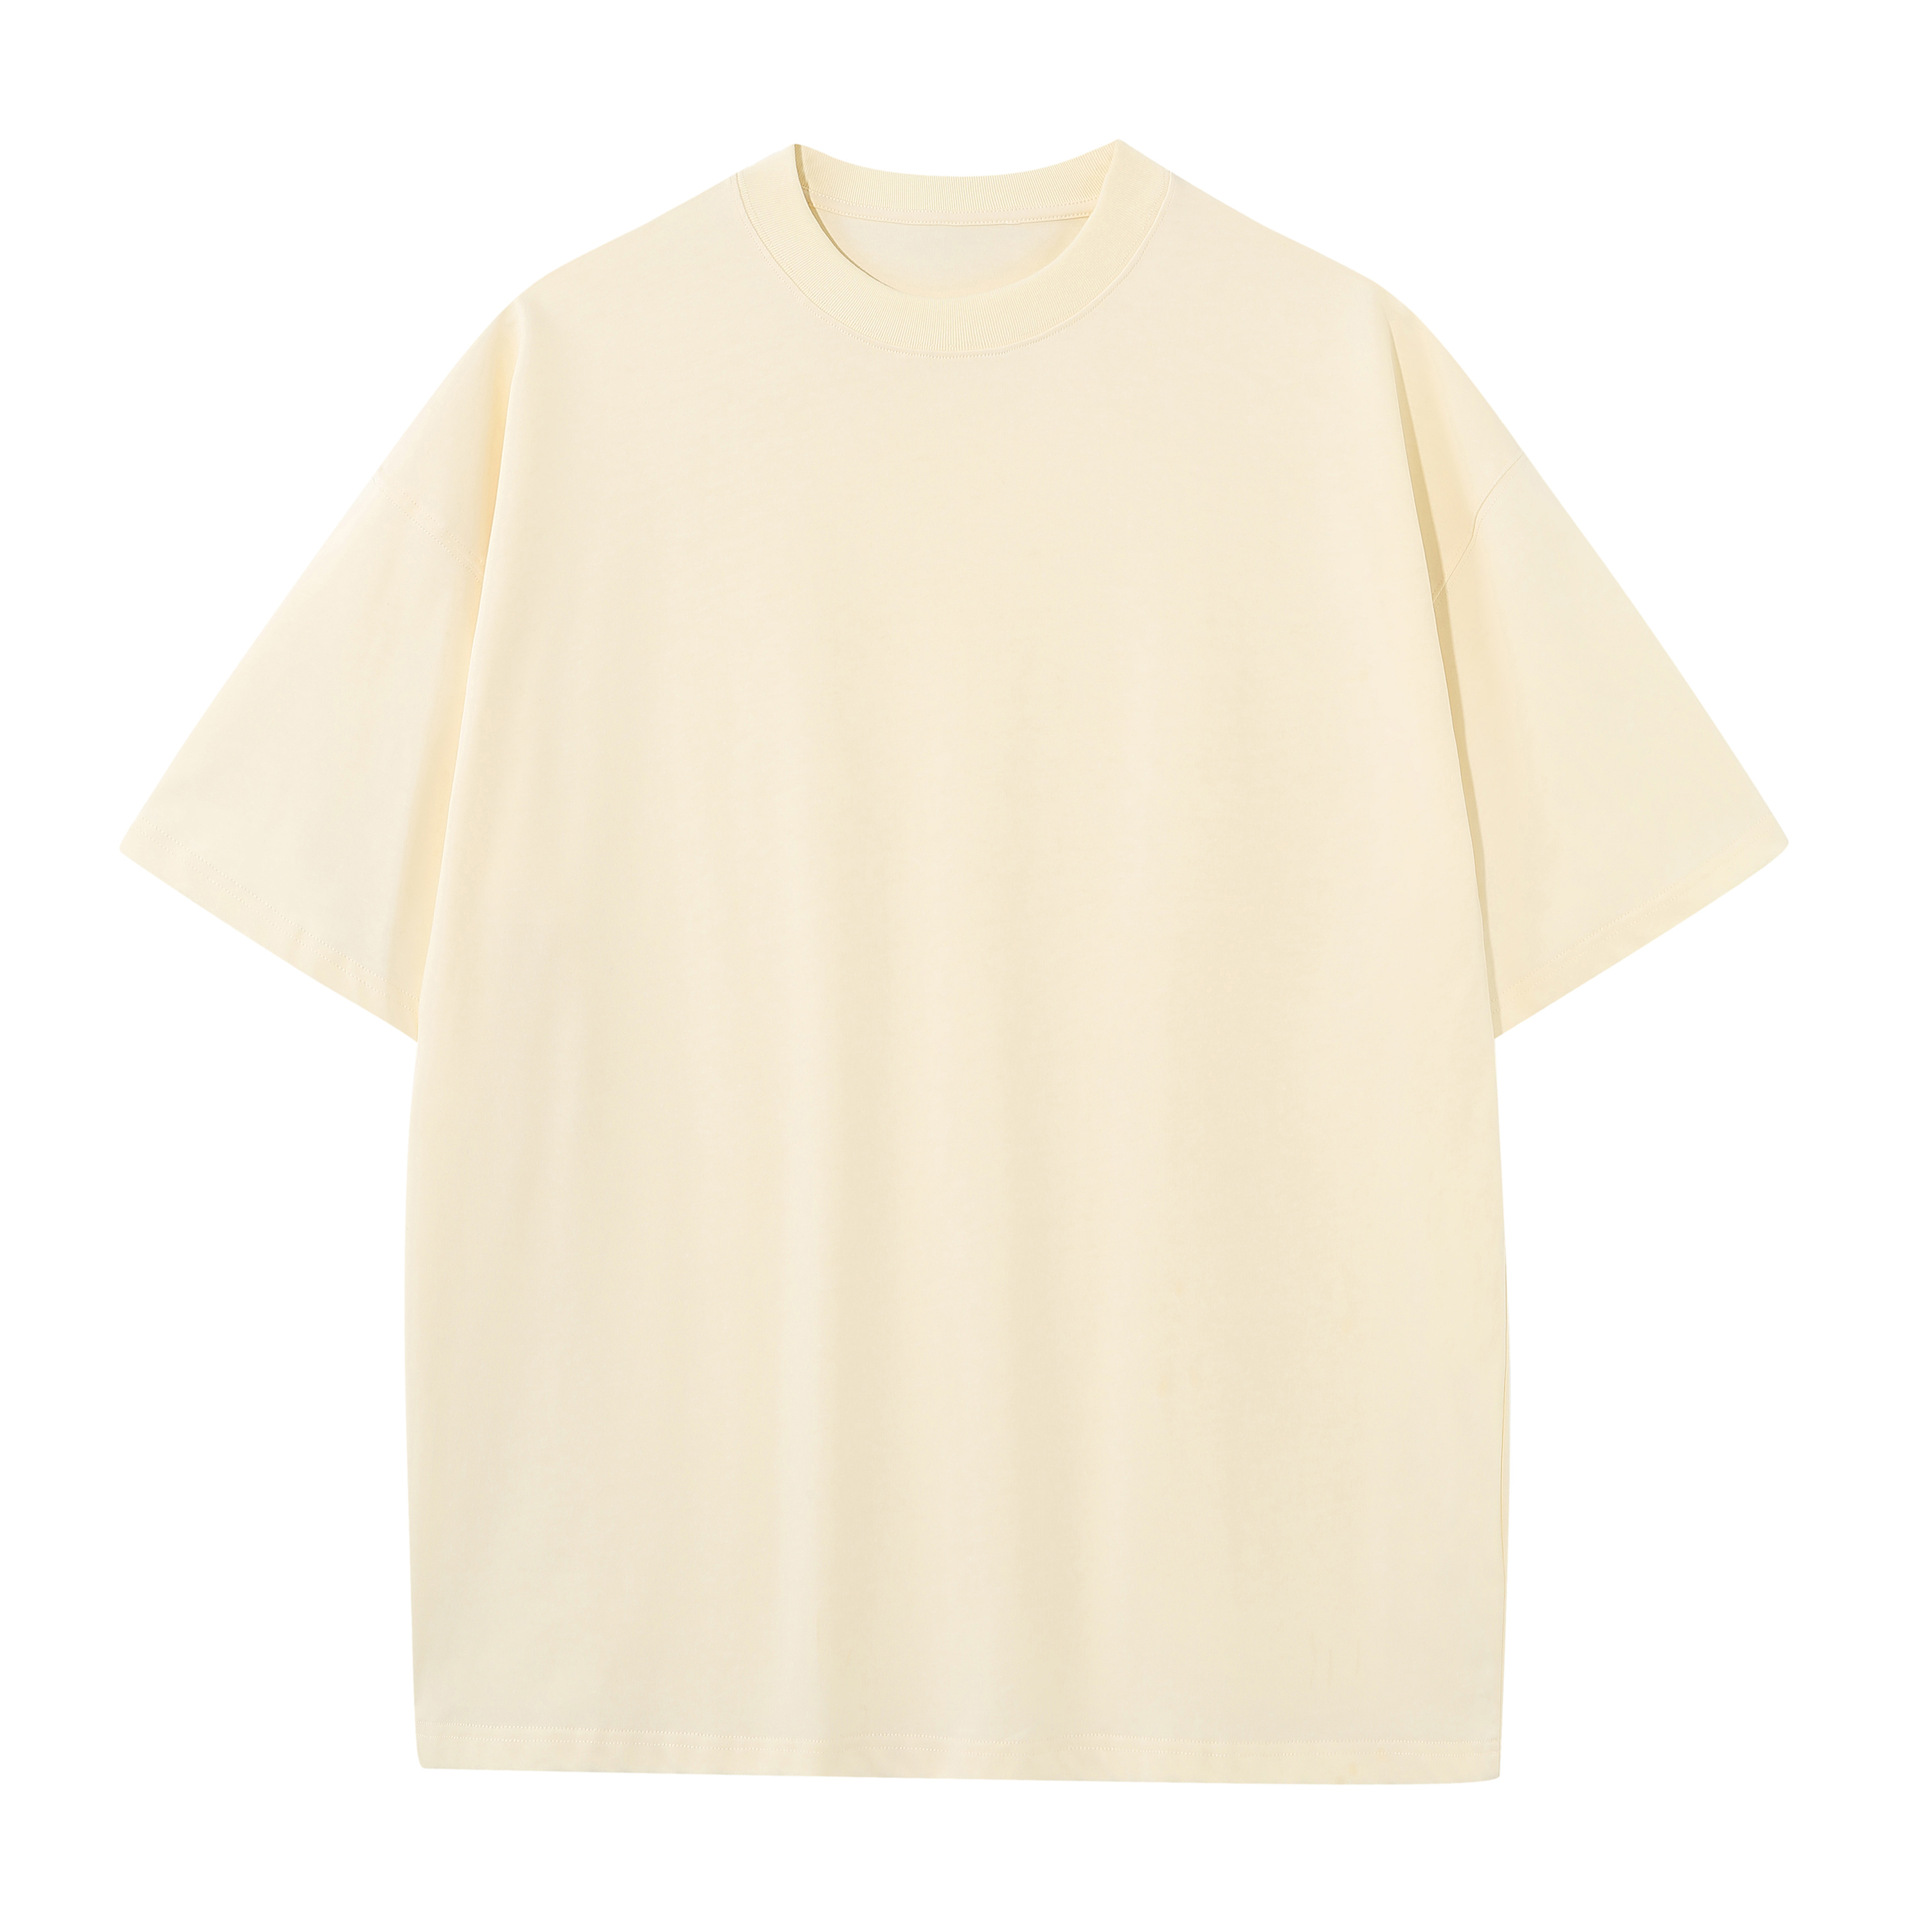 Erkek tasarımcı tişört yaz tişört tişört hip hop erkek kadın siyah beyaz kısa kollu tees boyutu S-xxl